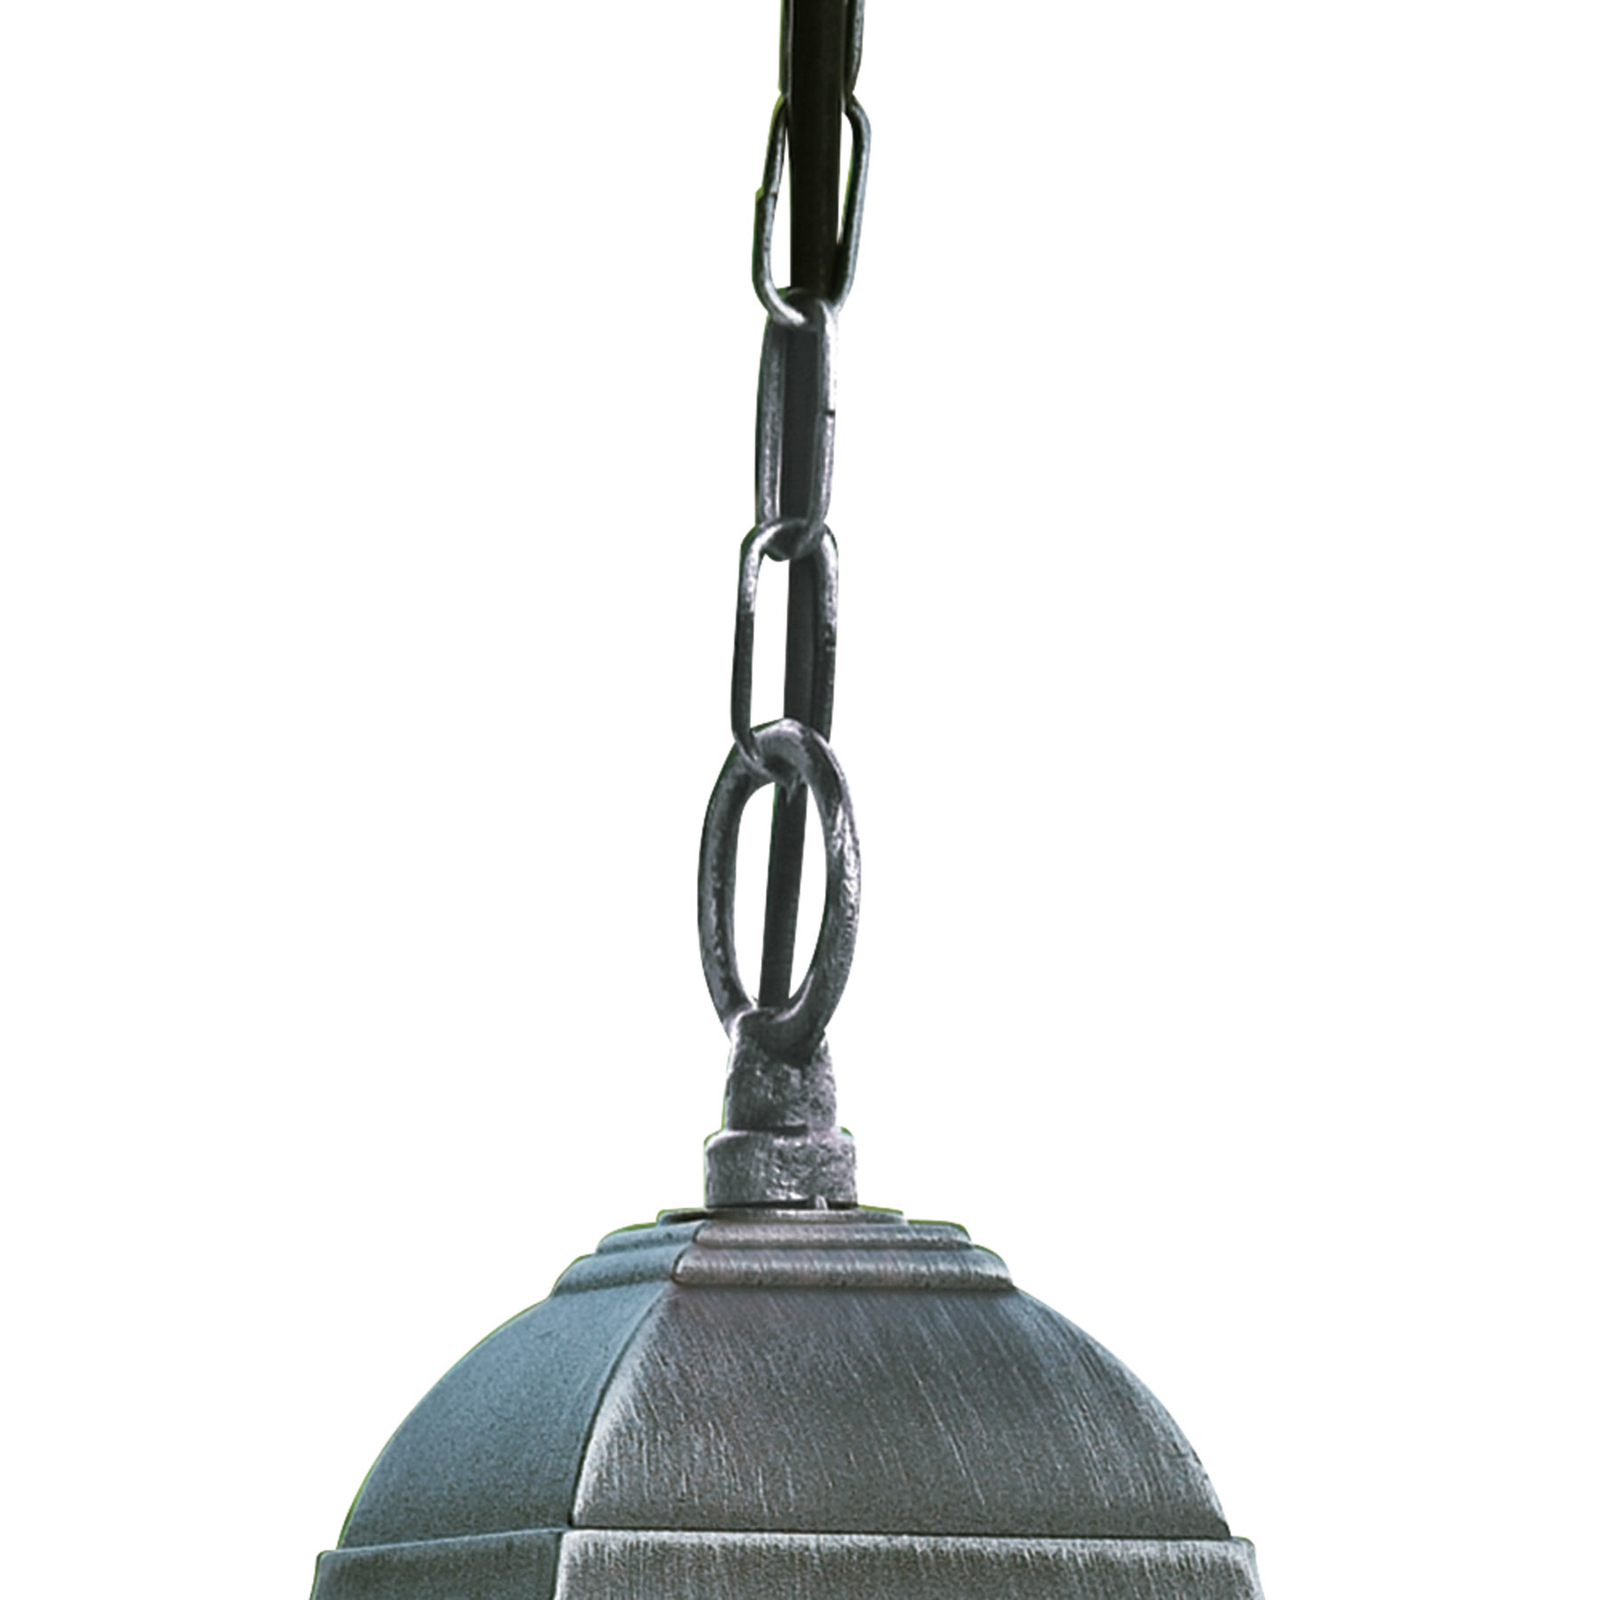 Genova õuele riputatav lamp pliiklaasiga